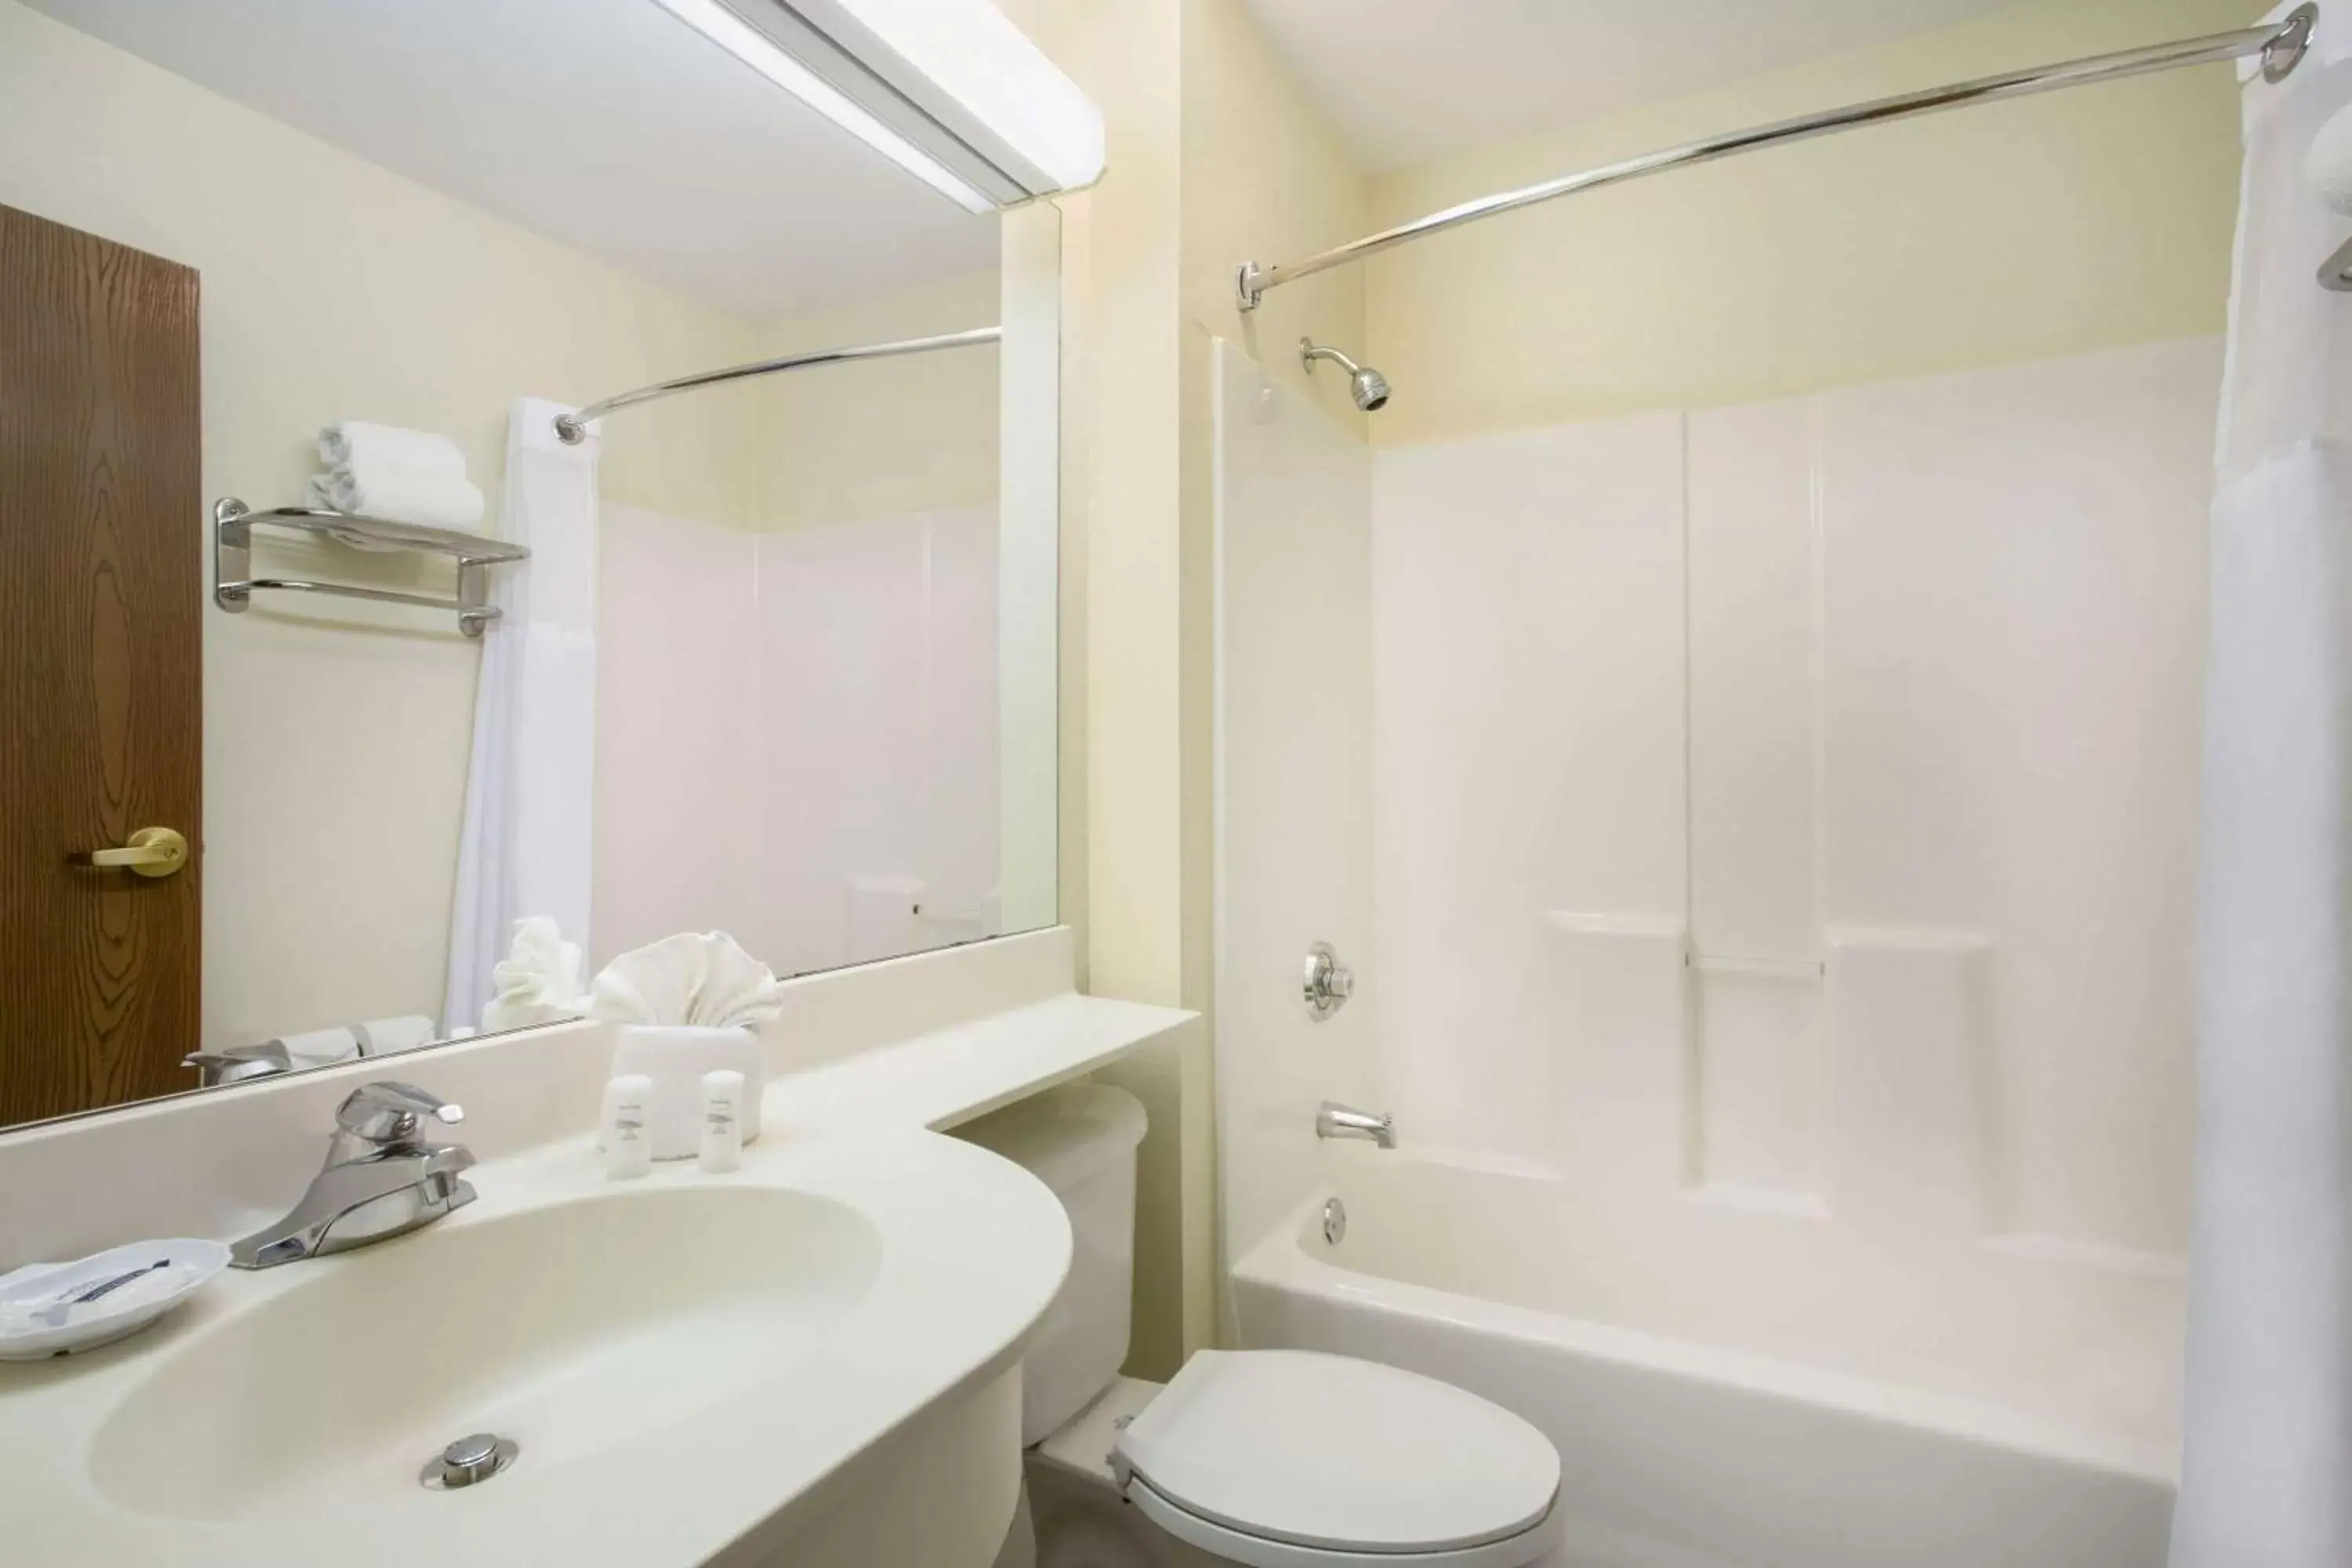 Bathroom in Microtel Inn & Suites Leesburg